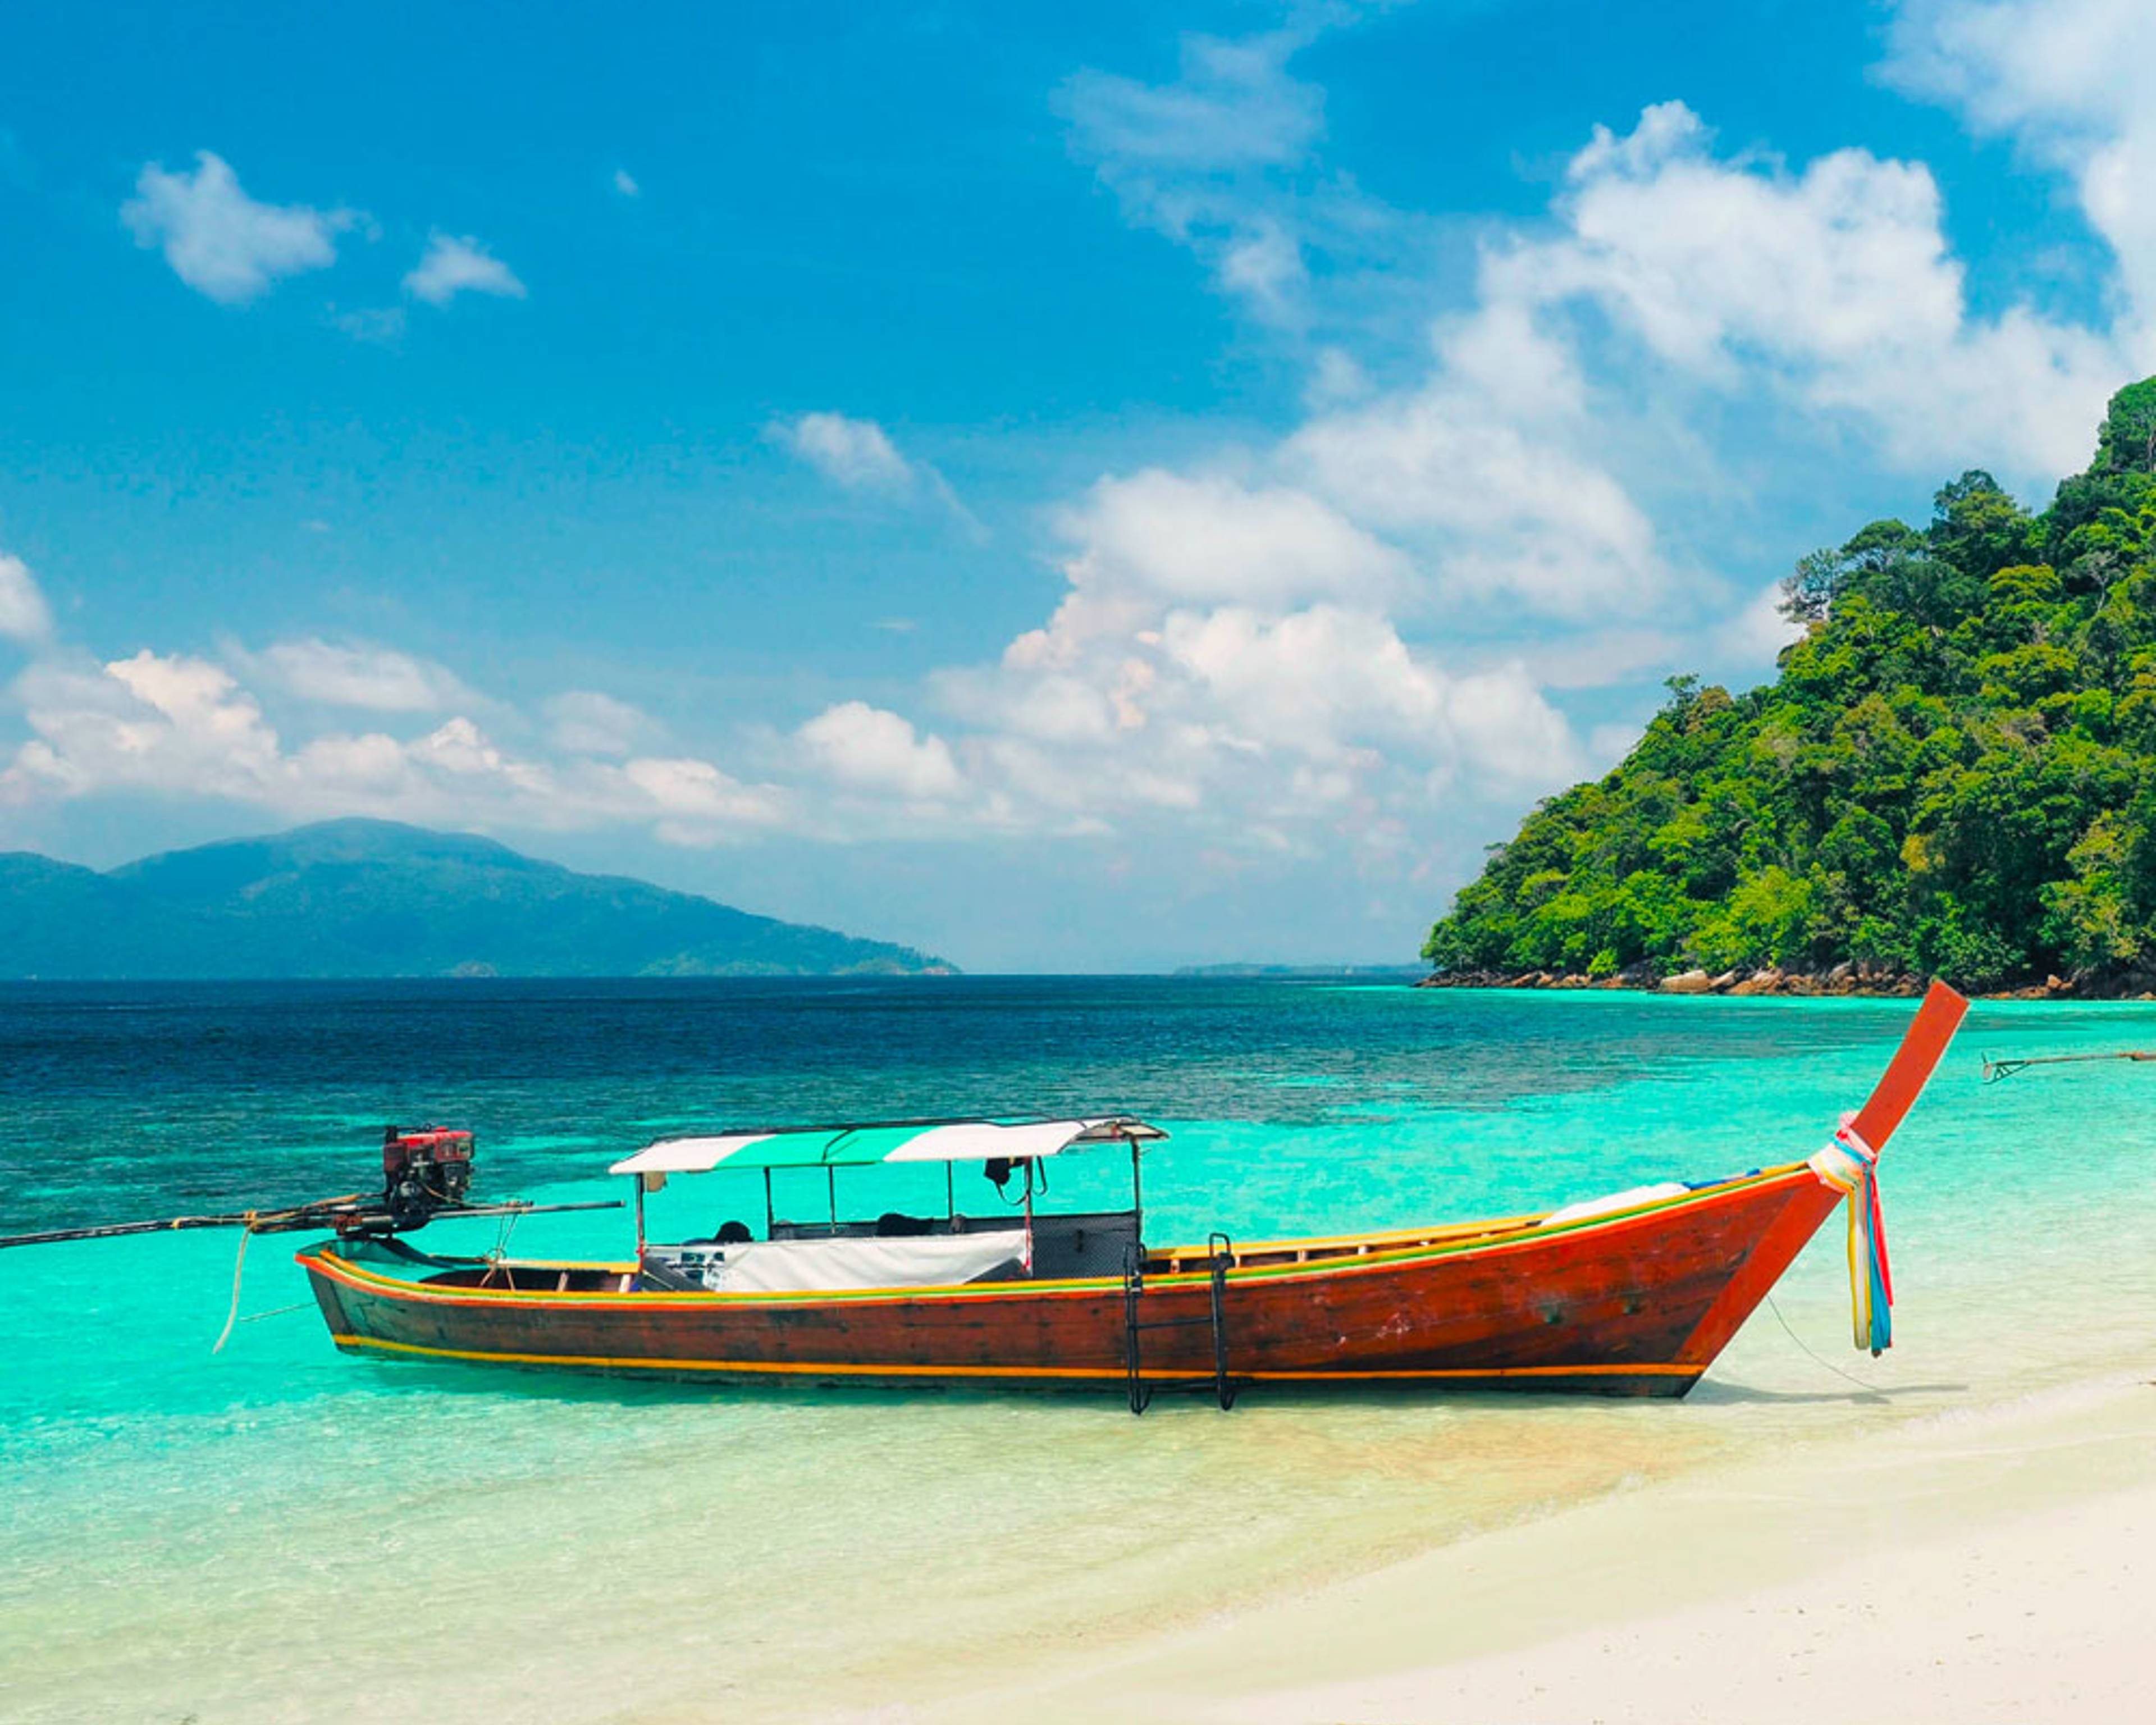 Découvrez les plus belles plages lors de votre voyage en Thaïlande 100% sur mesure